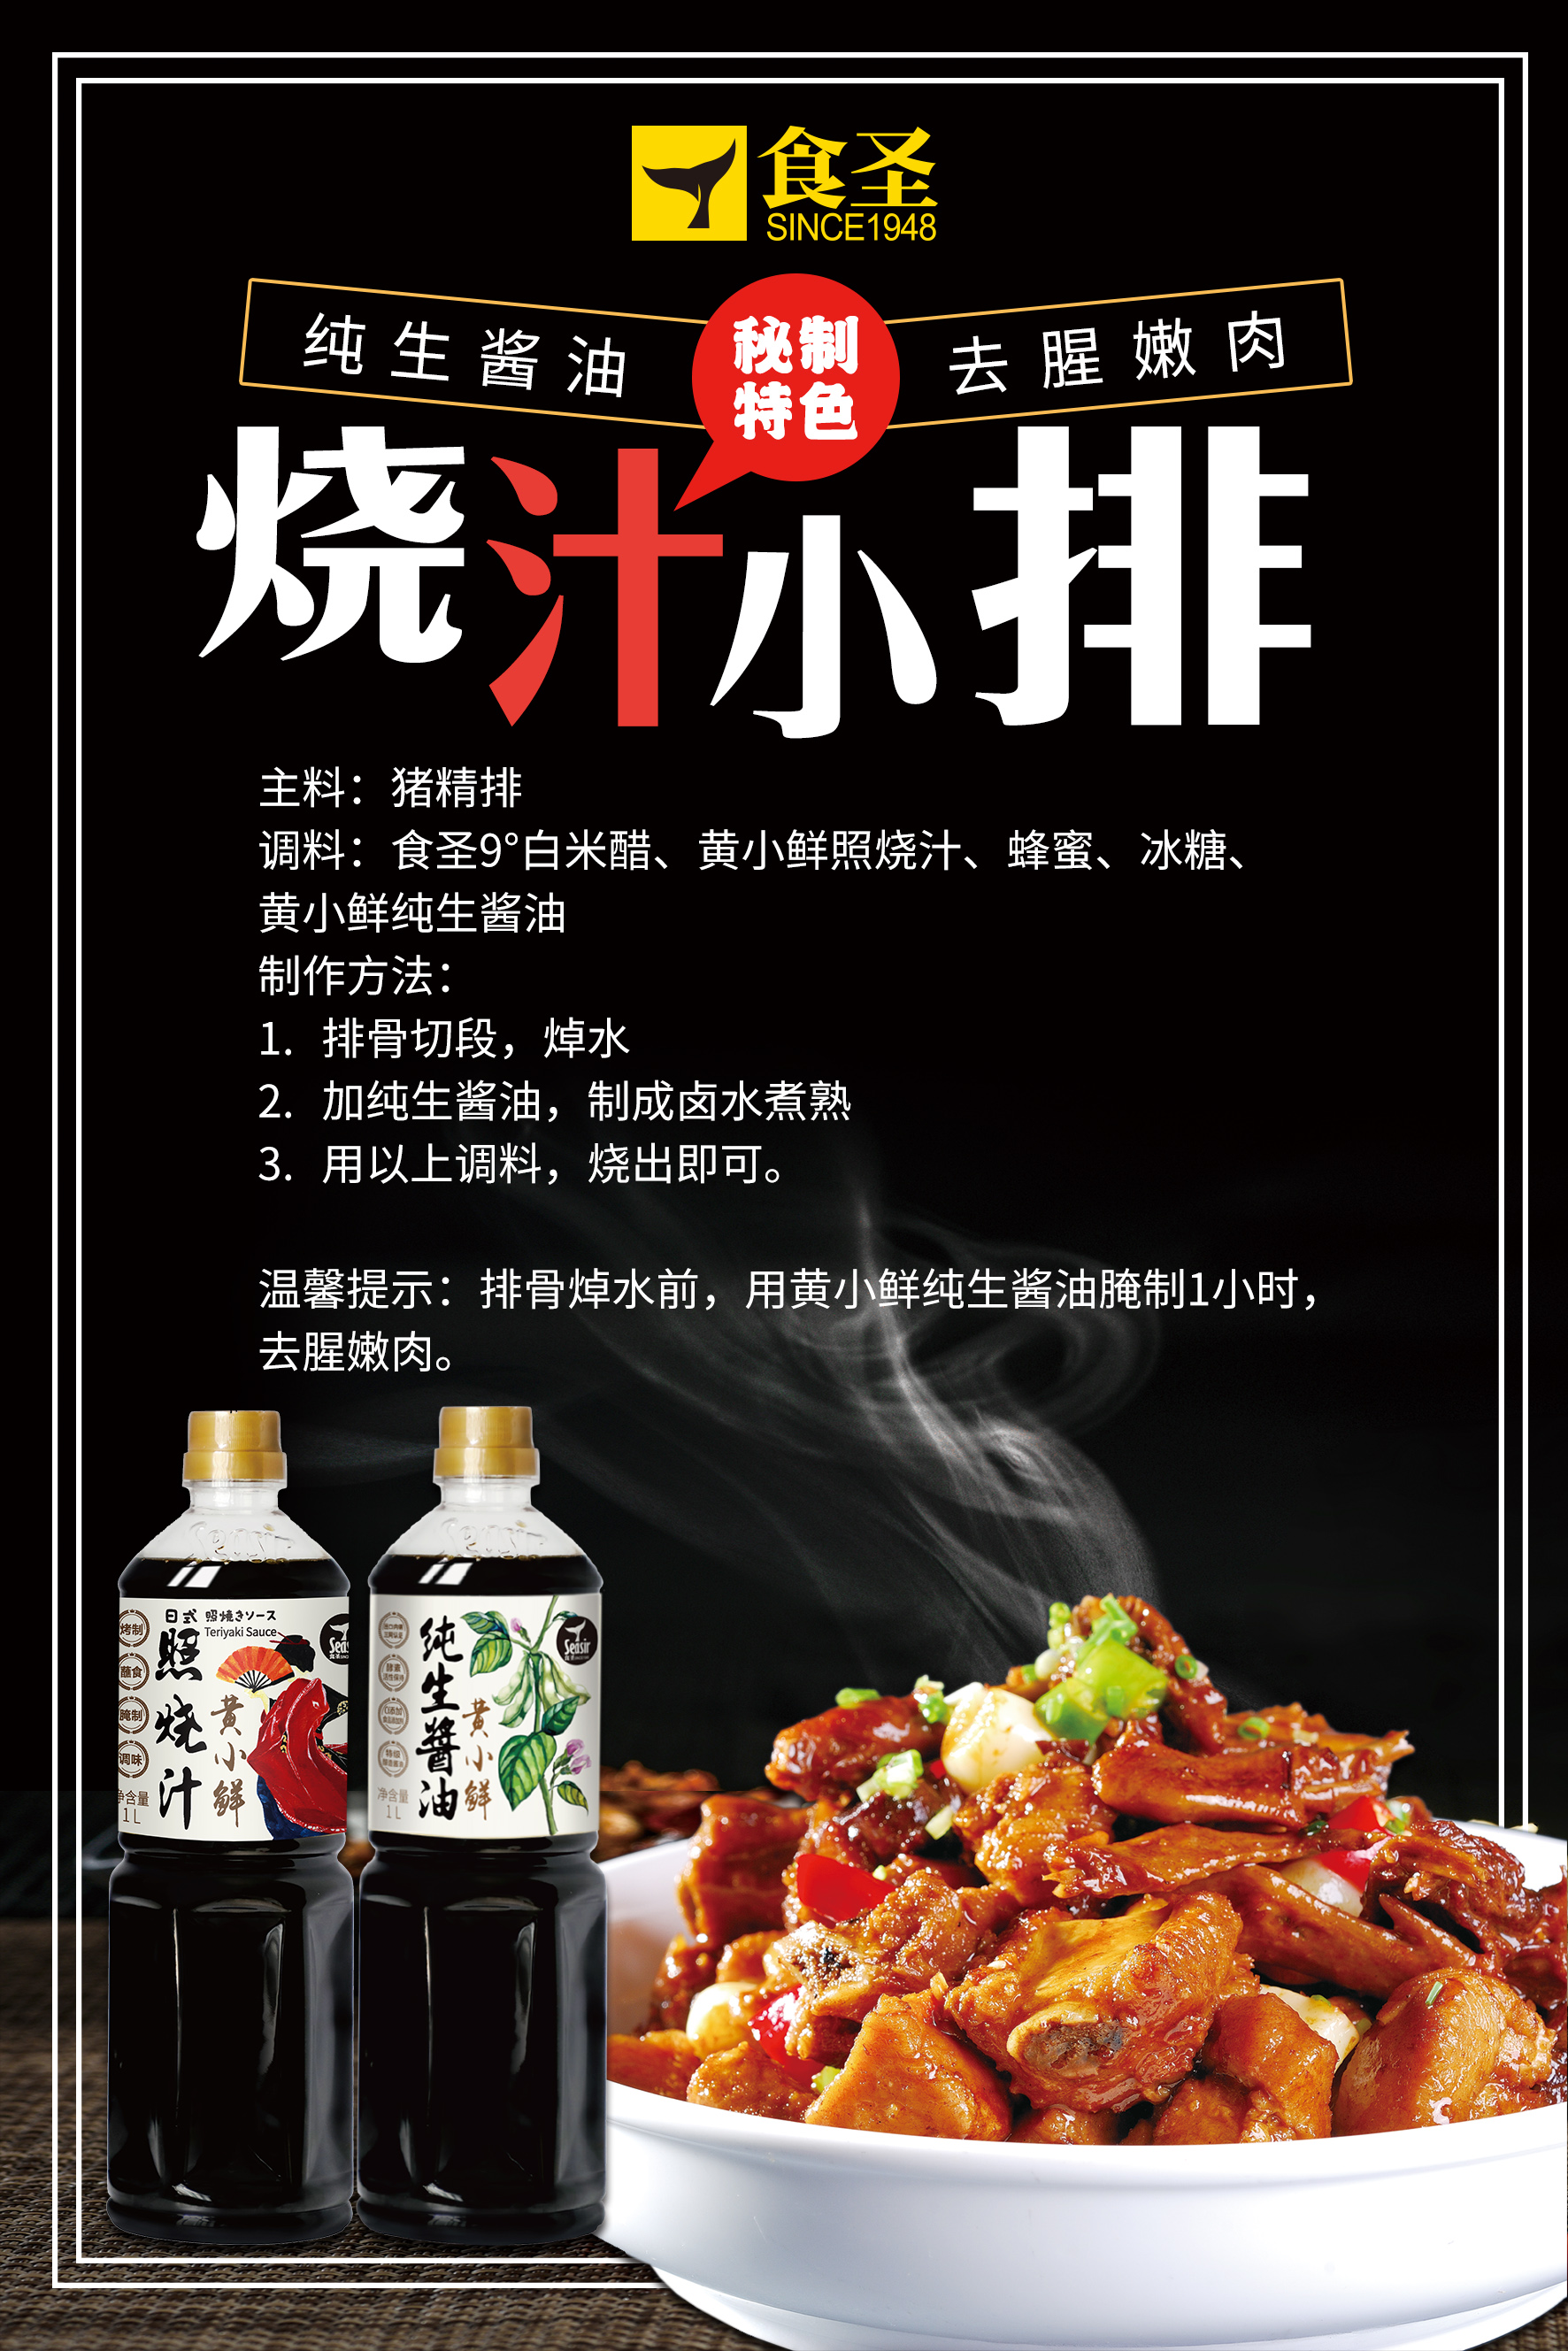 海天 金标米醋 | HT Gold Rice Vinegar 450ml - HappyGo Asian Market